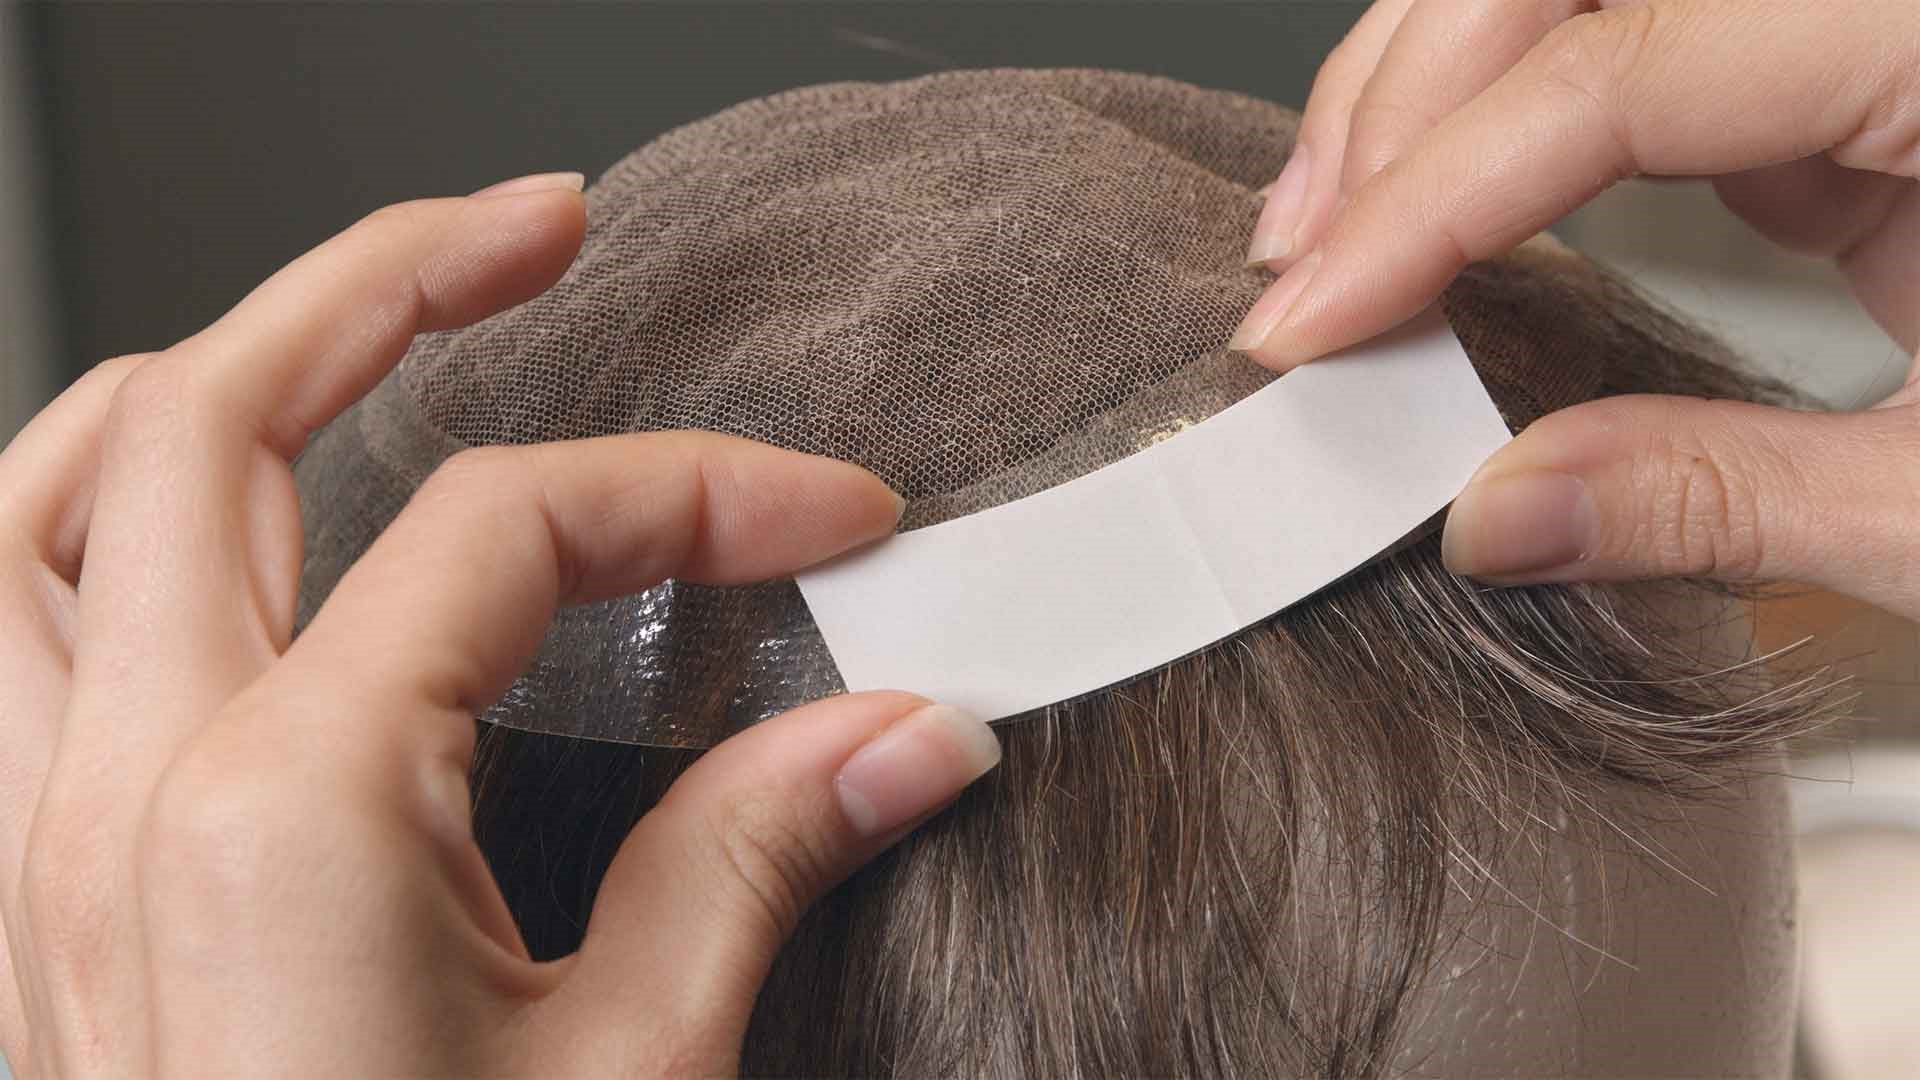 Protez Saç Bantları Temzileme 2. Adım | Protez Saçlar nasıl temizlenir?